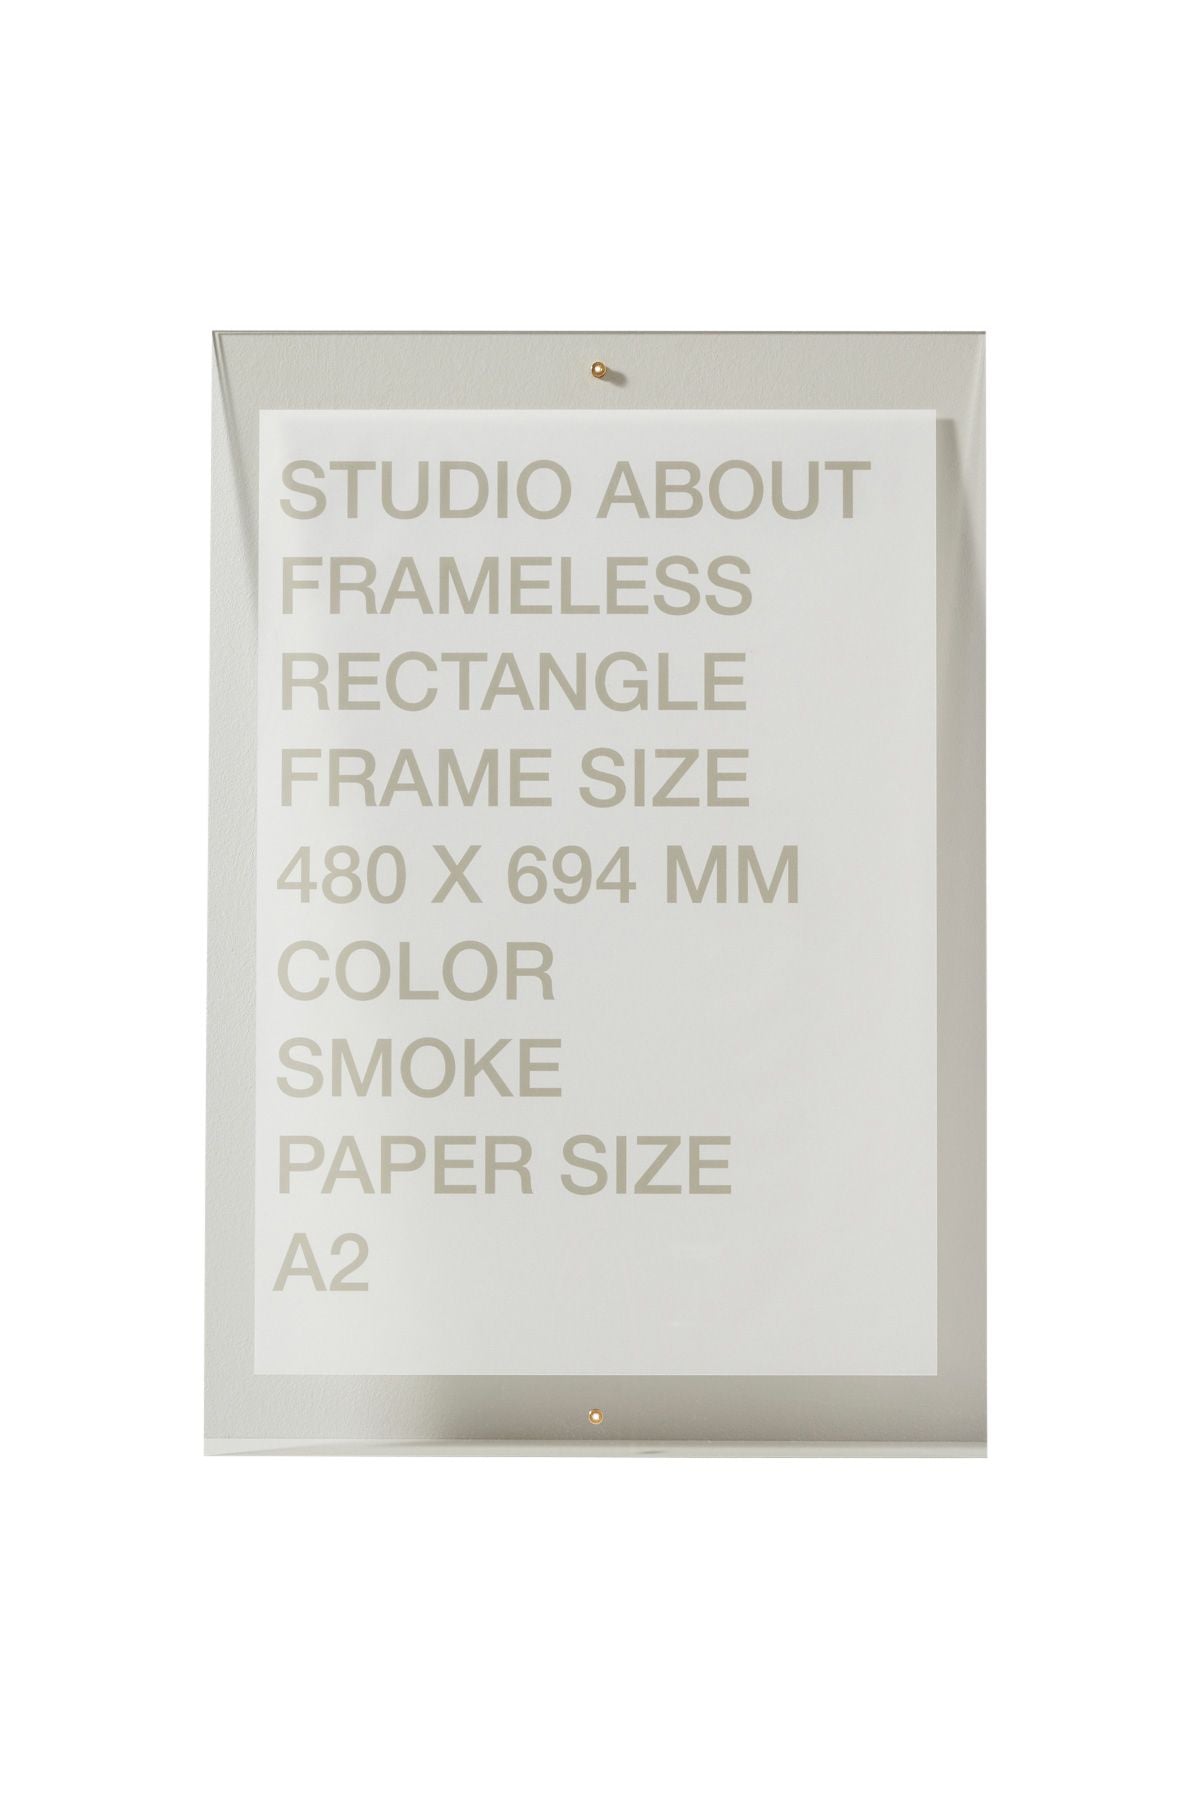 Studio sur le cadre sans cadre A2 rectangle, fumée